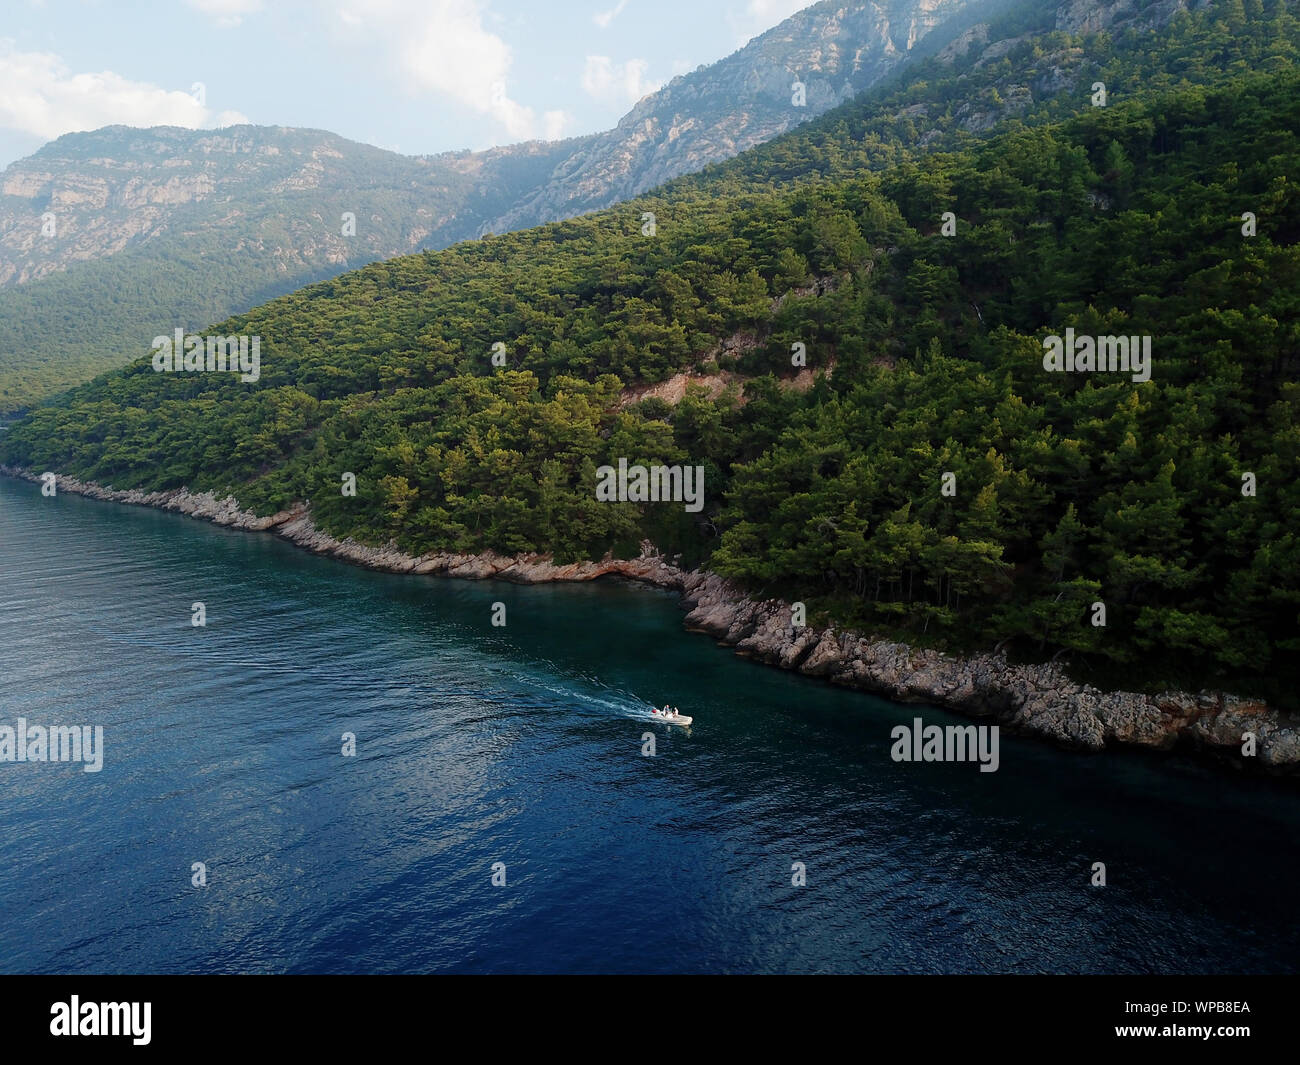 Vista aerea della baia di Gokova, Area Marina Protetta la Turchia Foto Stock